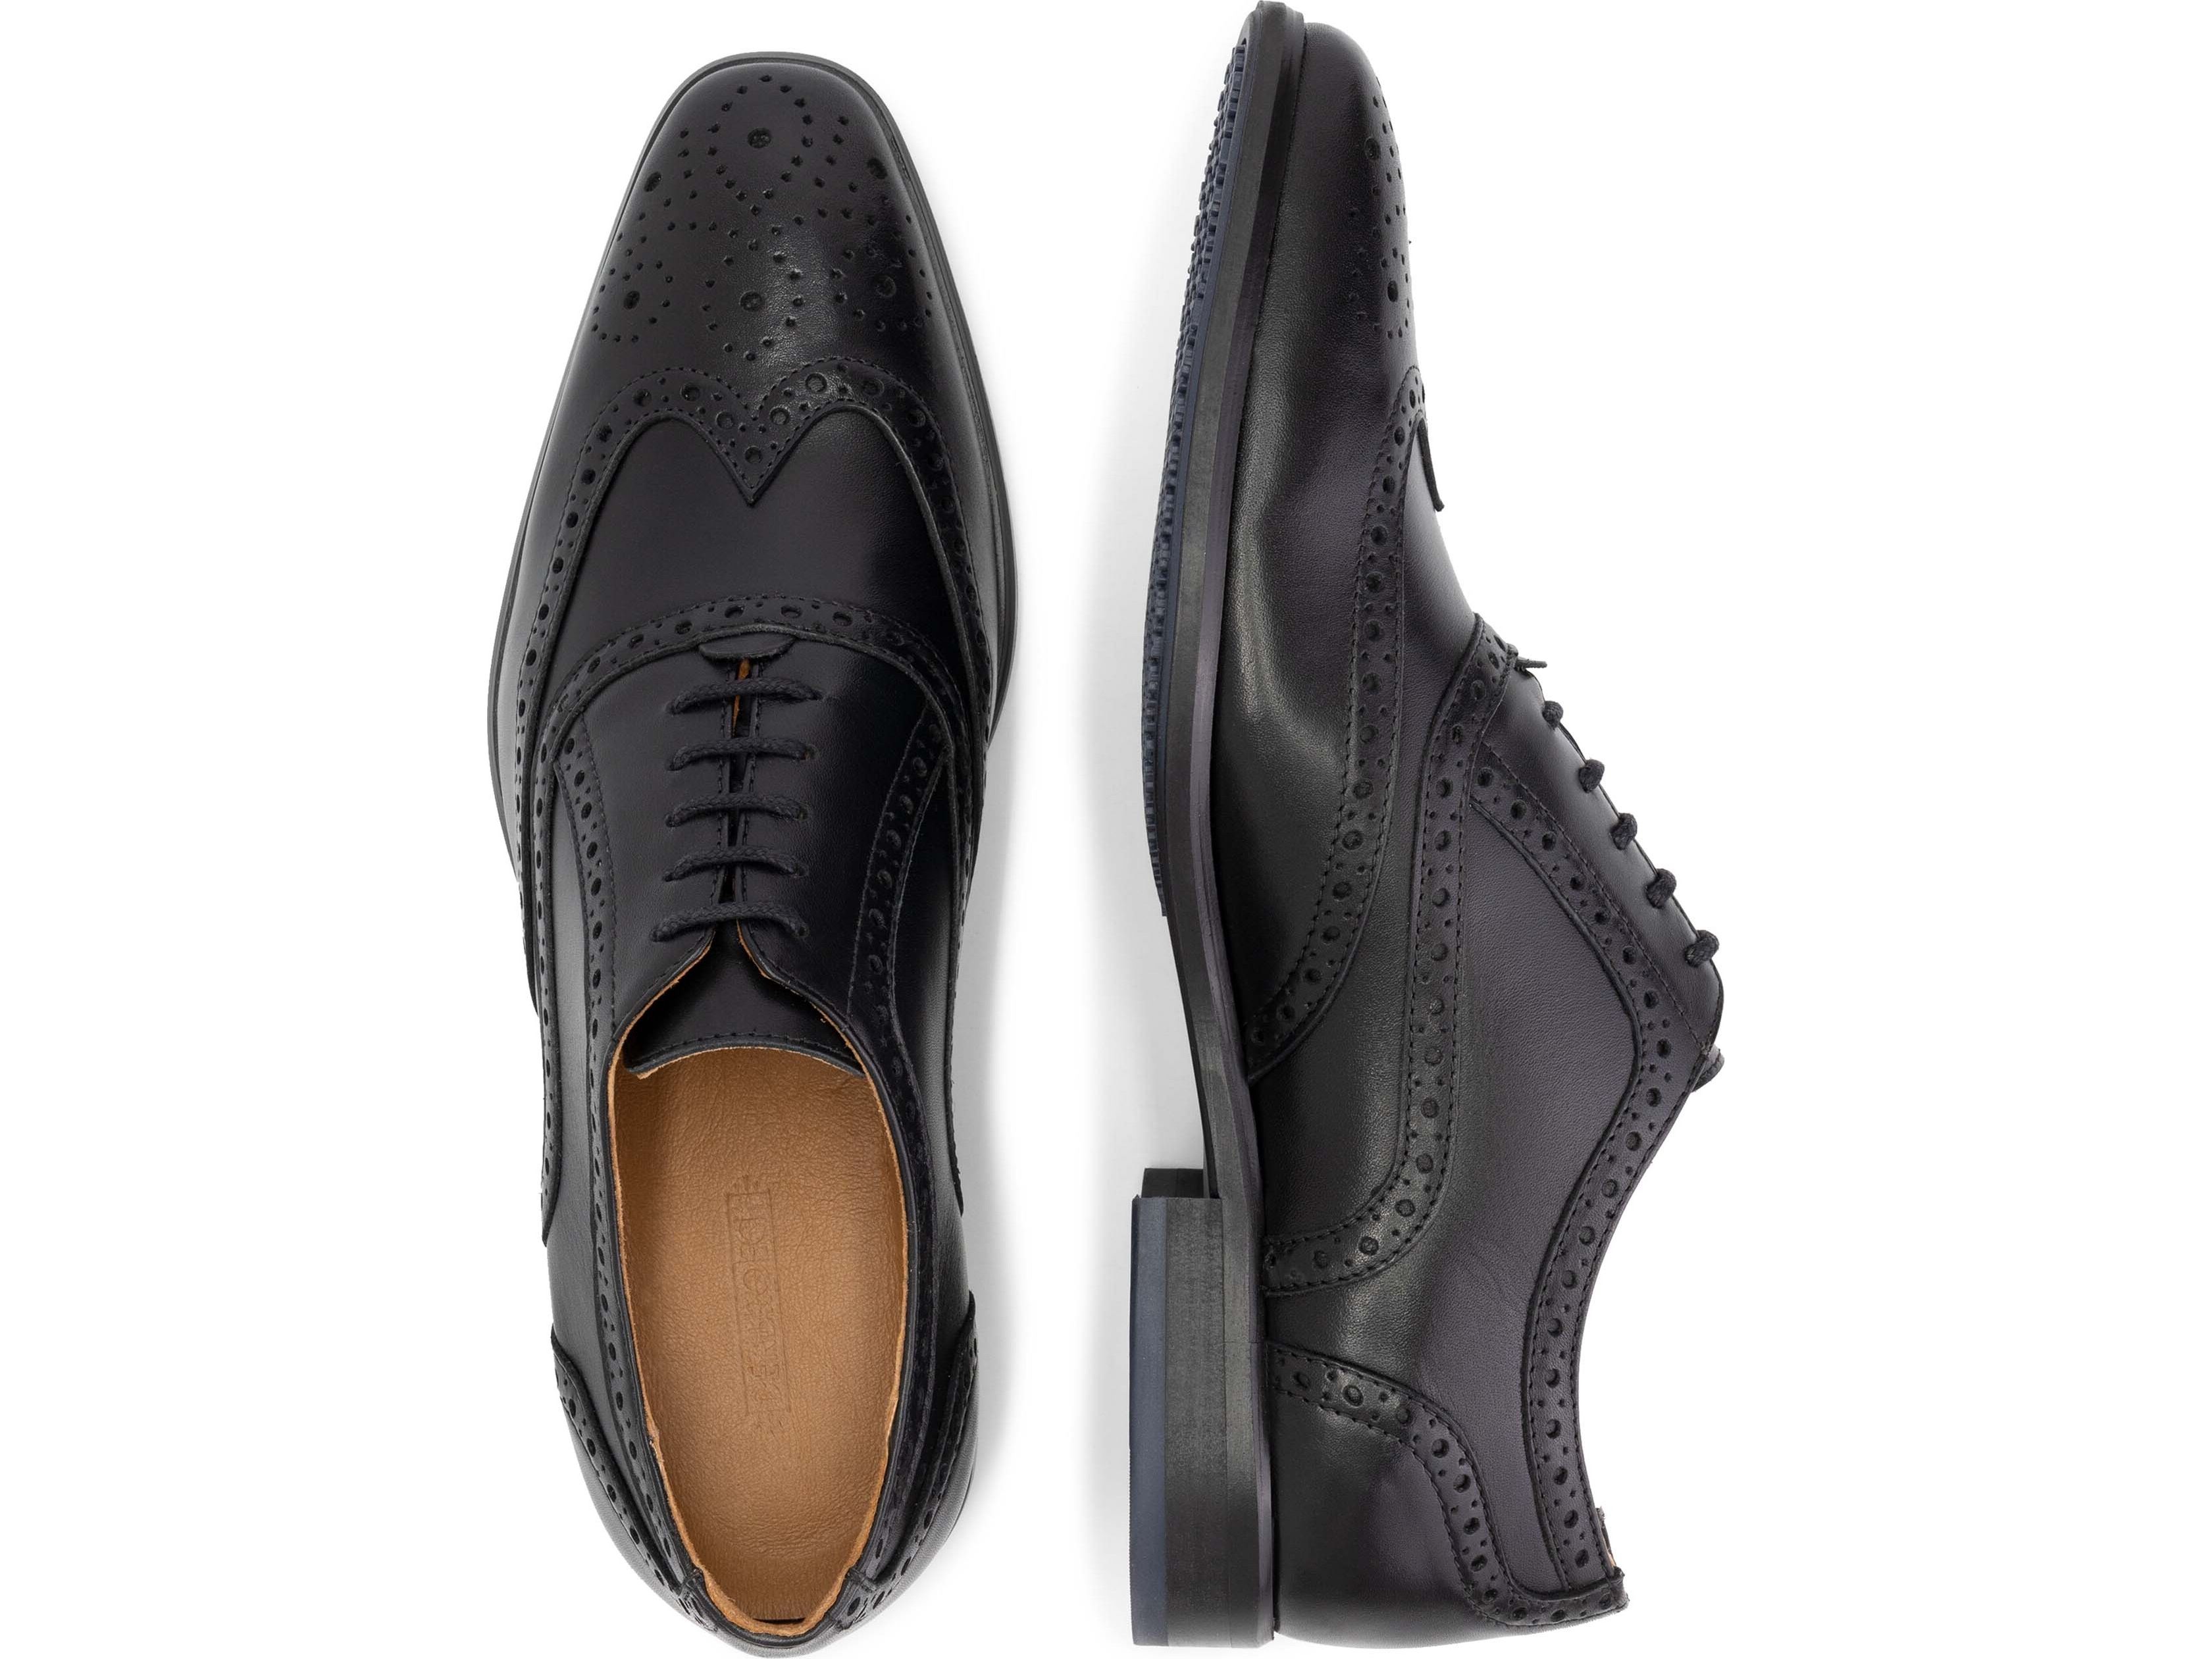 denbroeck-state-st-schoenen-heren